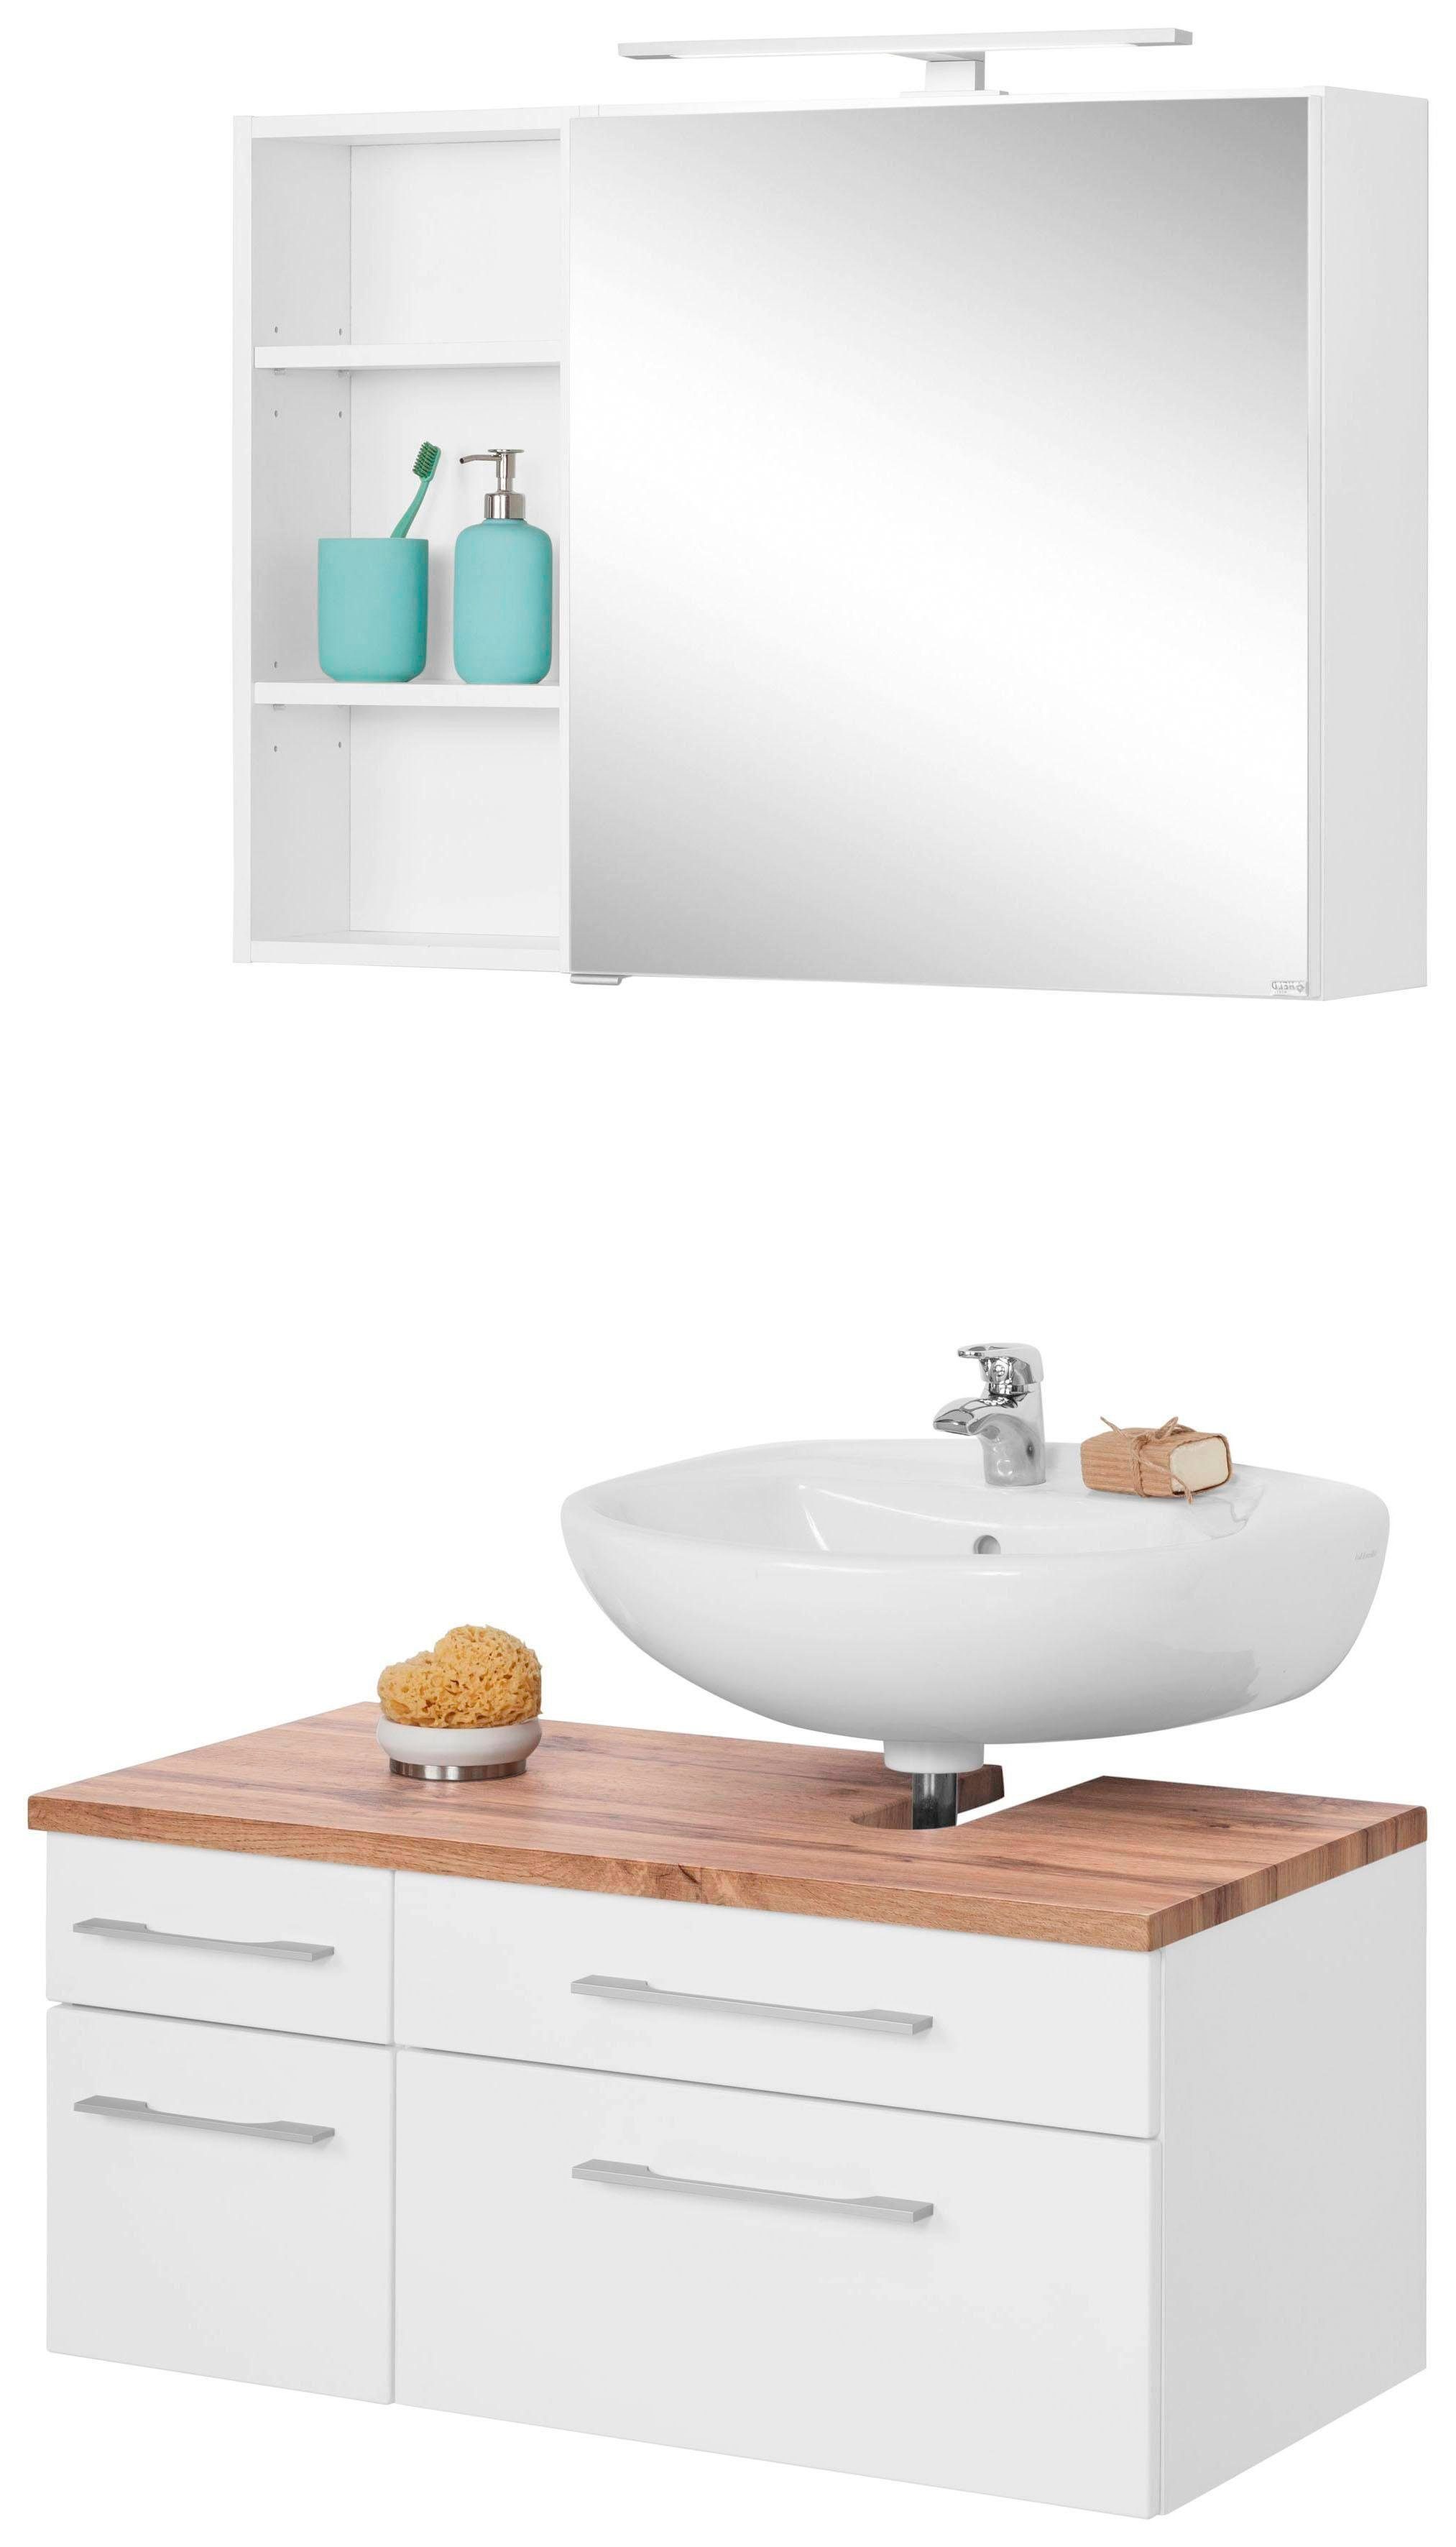 held moebel badkamerserie davos spiegelkast, rek en wastafelonderkast (3-delig) wit